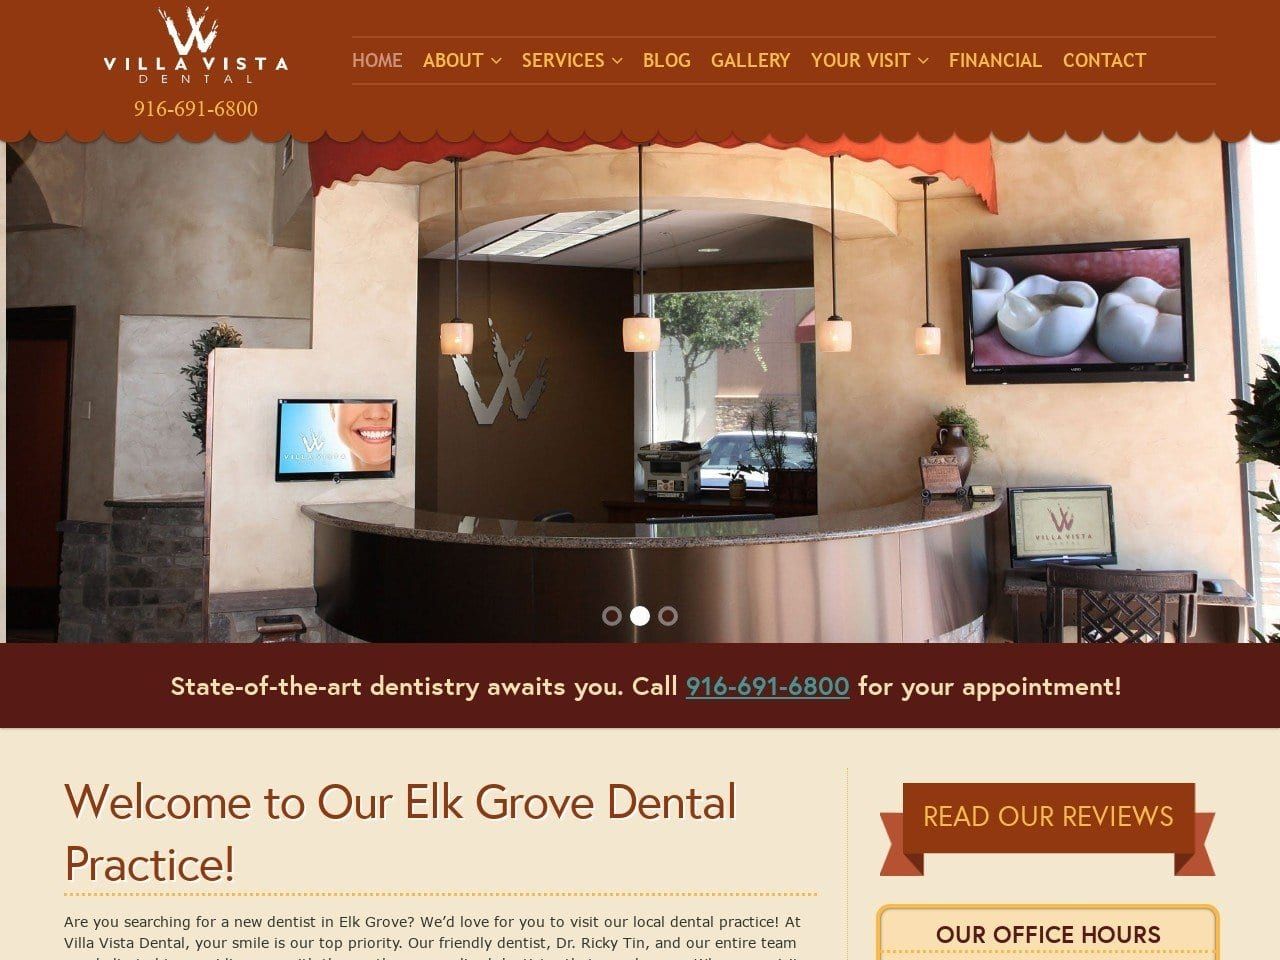 Villavista Dental Website Screenshot from villavistadental.com